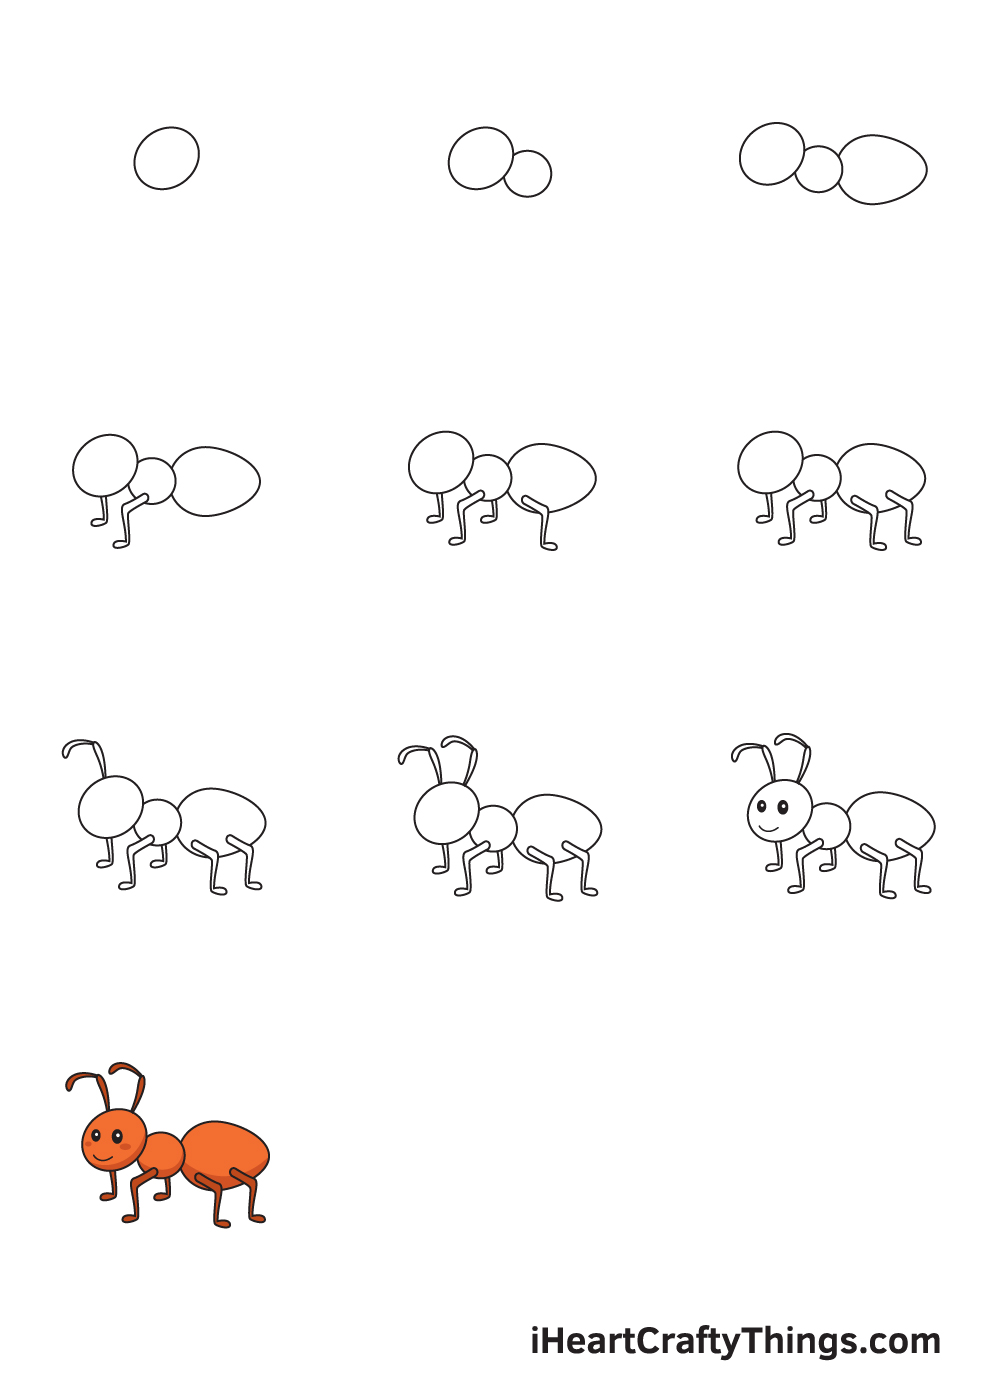 Drawing Ant in 10 Easy Steps - Hướng dẫn chi tiết cách vẽ con kiến đơn giản với 9 bước cơ bản